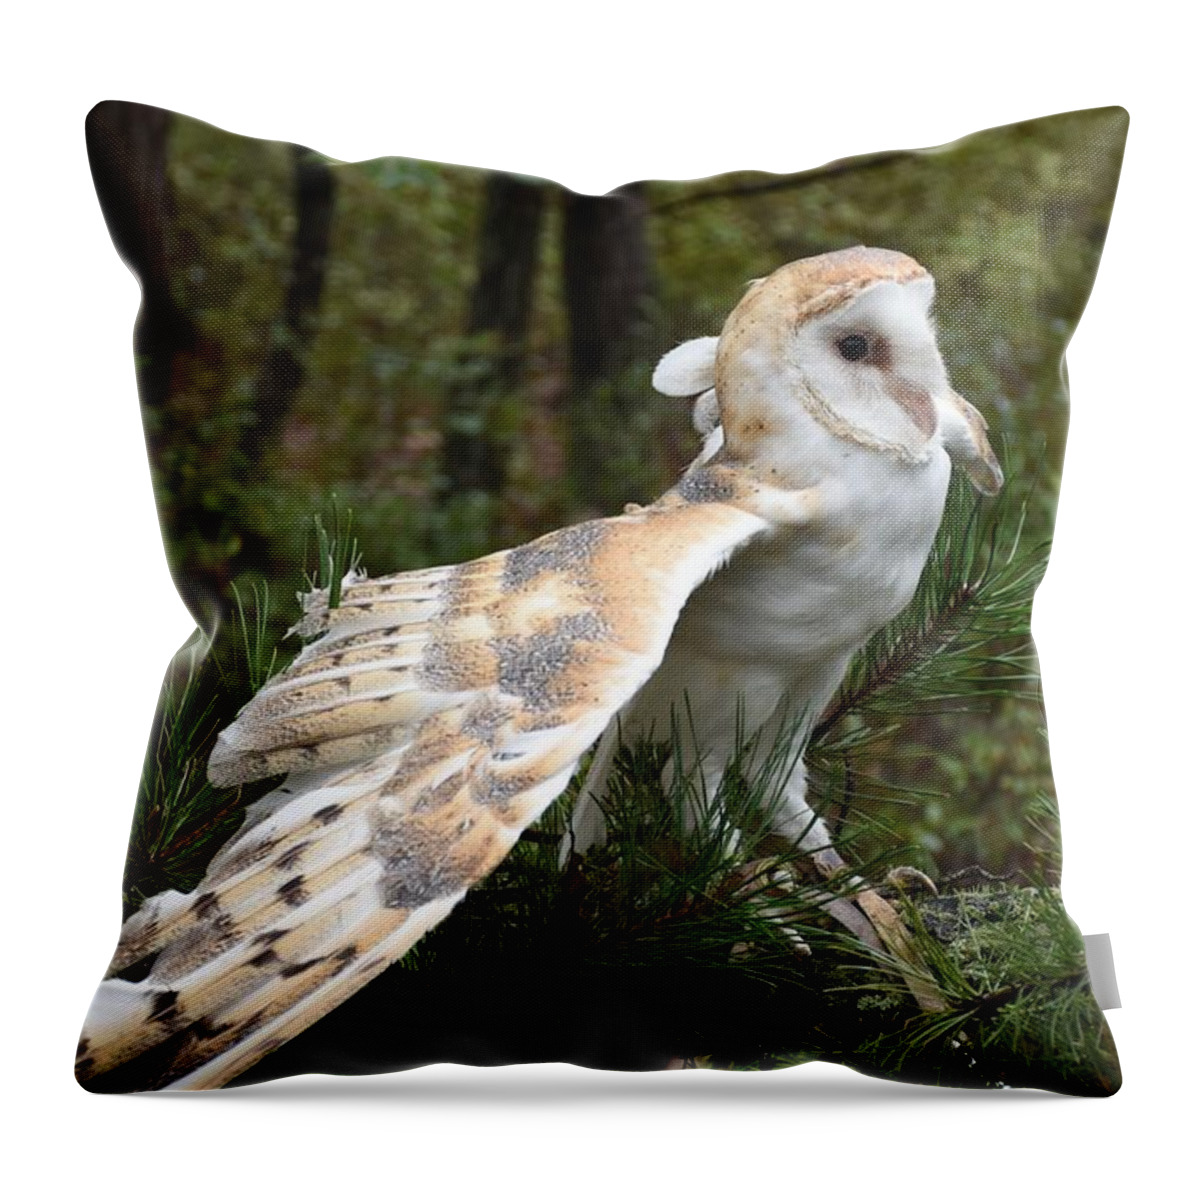 Barn Owl Throw Pillow featuring the photograph Barn Owl 528 by Joyce StJames